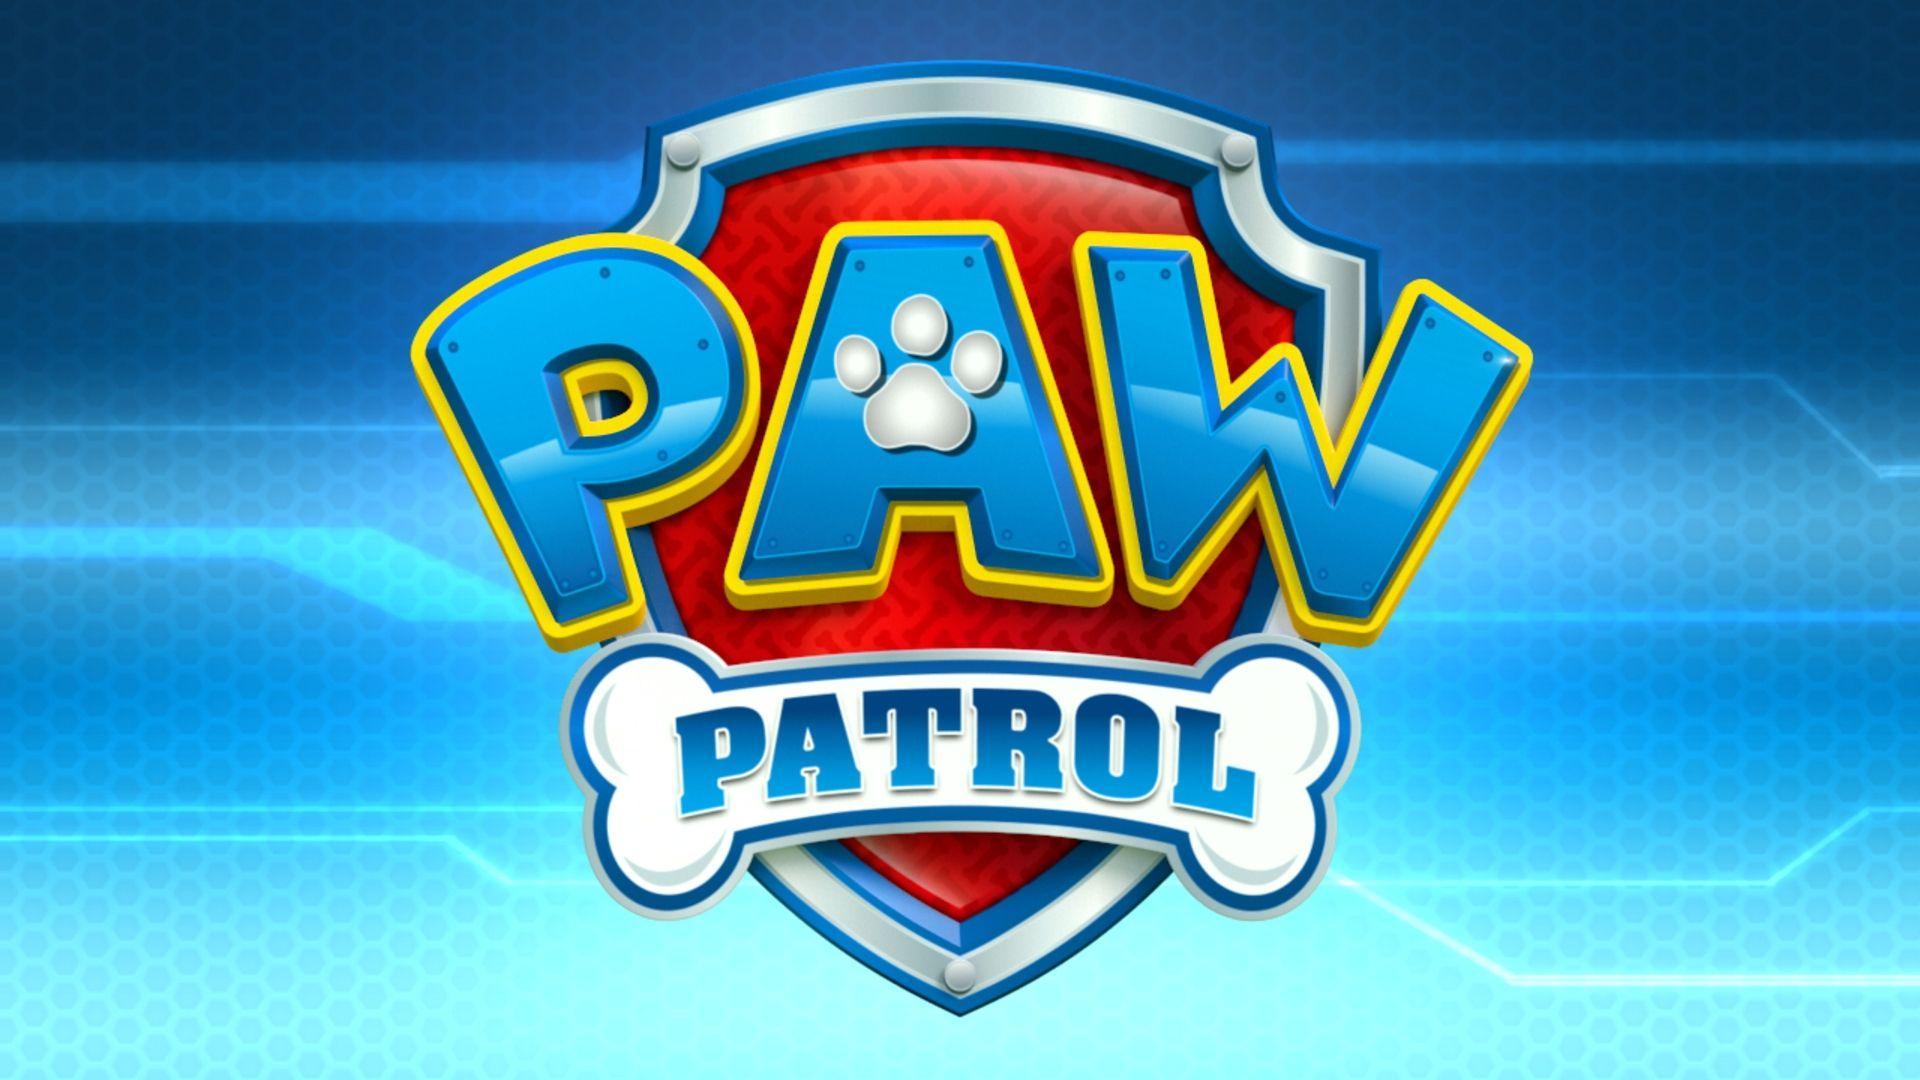 paw patrol logo wallpapers  top free paw patrol logo